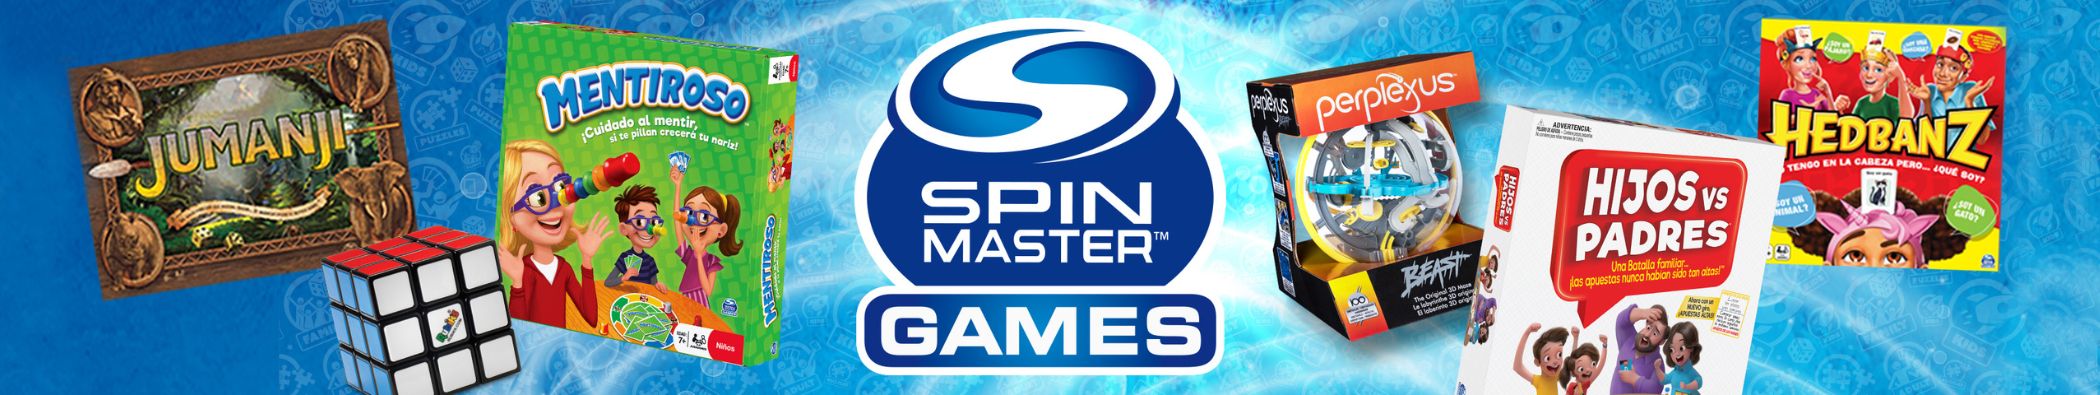 Juegos de mesa Spin Master